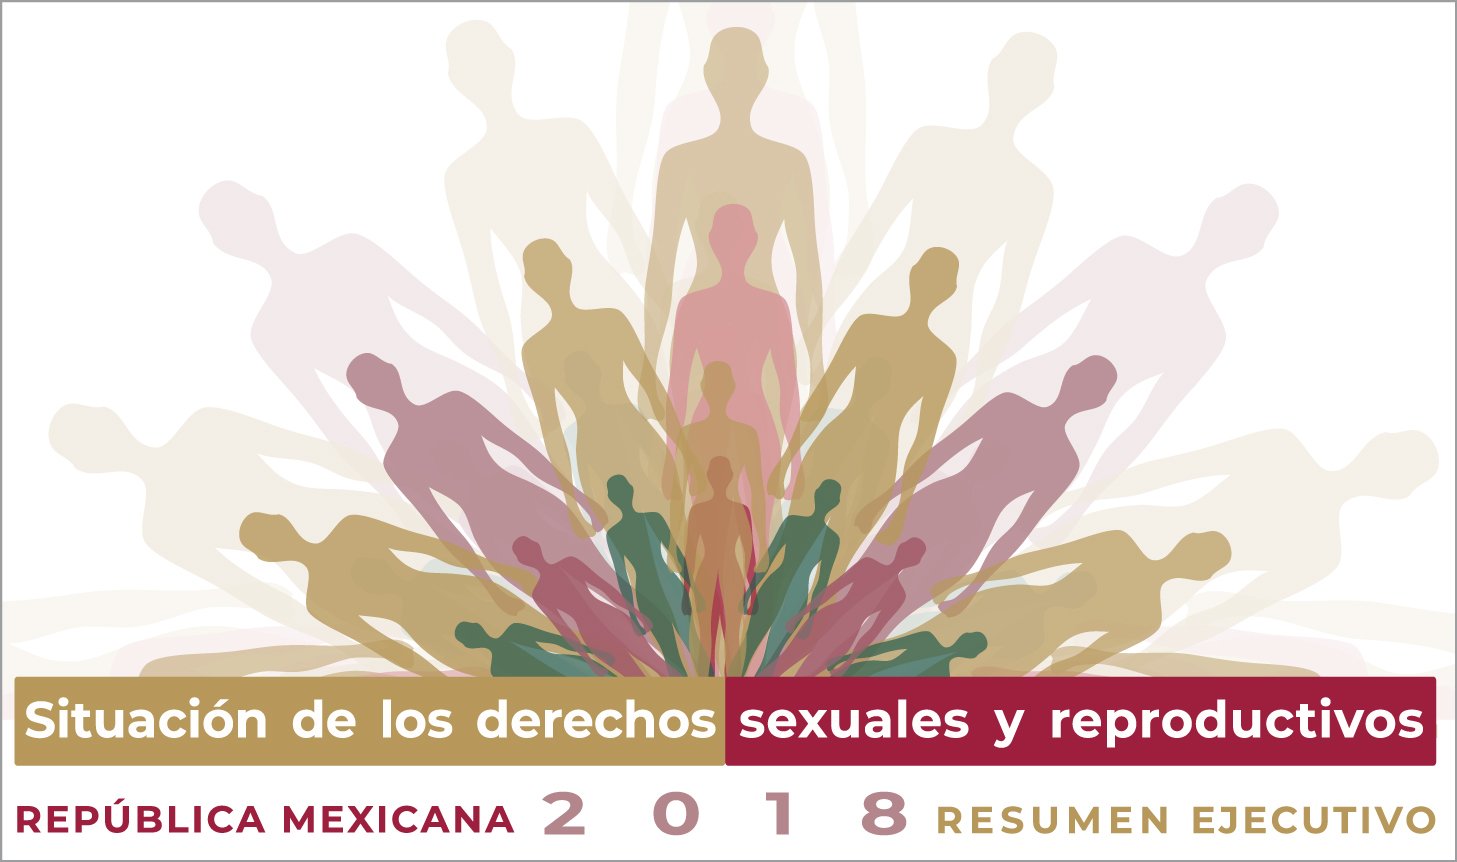 Situación de los derechos sexuales y reproductivos. 
República Mexicana, 2018. Resumen Ejecutivo
